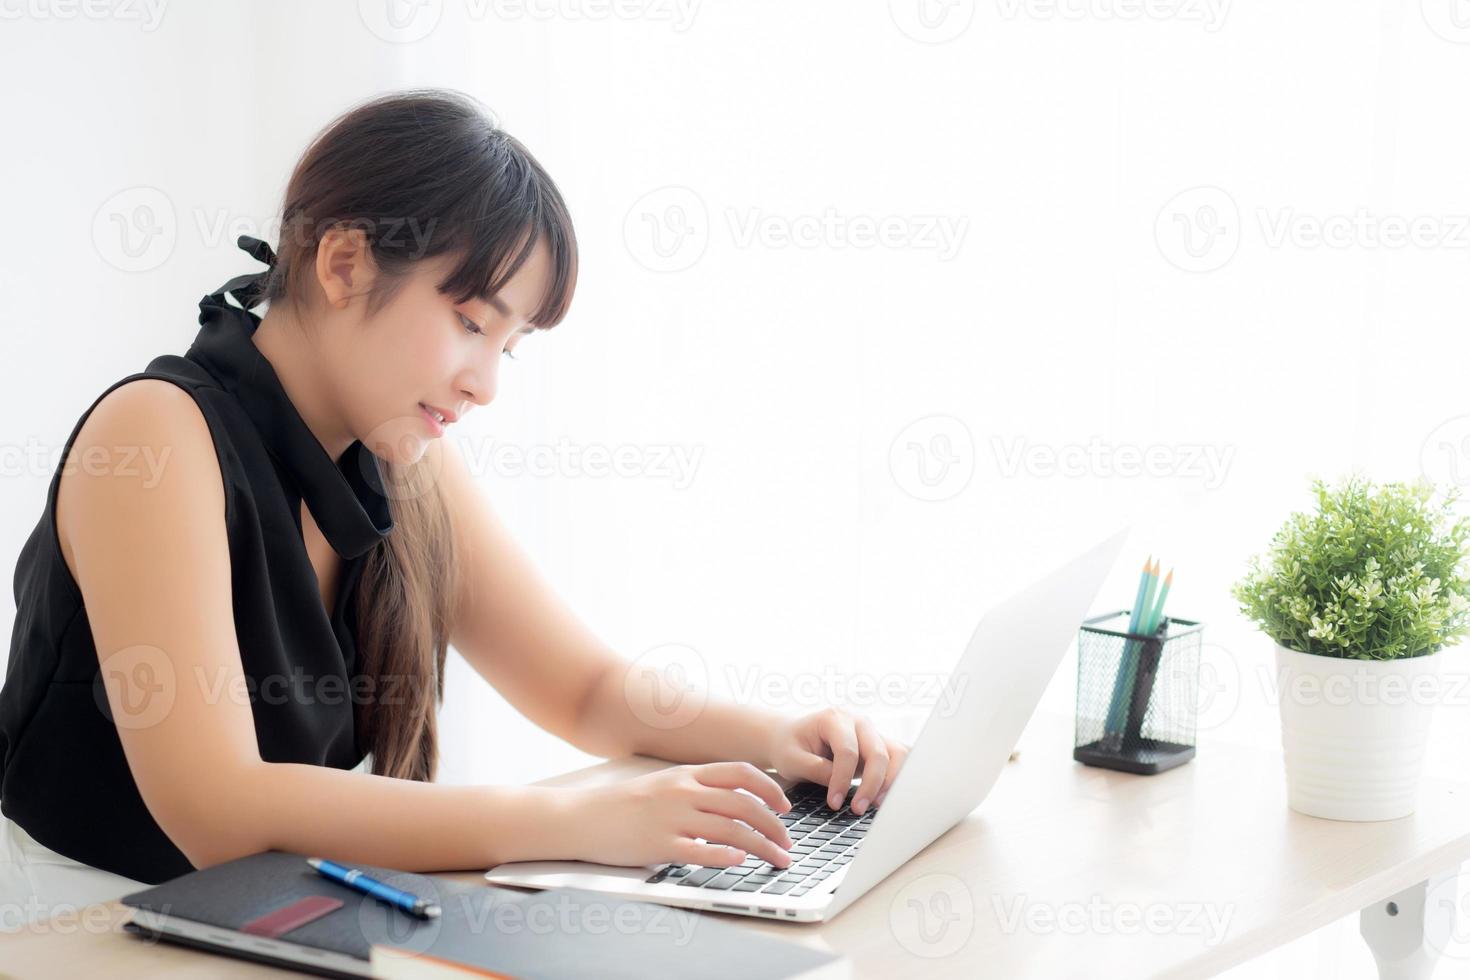 junge freiberufliche asiatische frau, die lächelt, arbeitet und tippt auf laptop-computer im schreibtischbüro mit professionellem mädchen, das notebook verwendet, um e-mails oder soziale netzwerke, geschäfts- und lebensstilkonzept zu überprüfen. foto